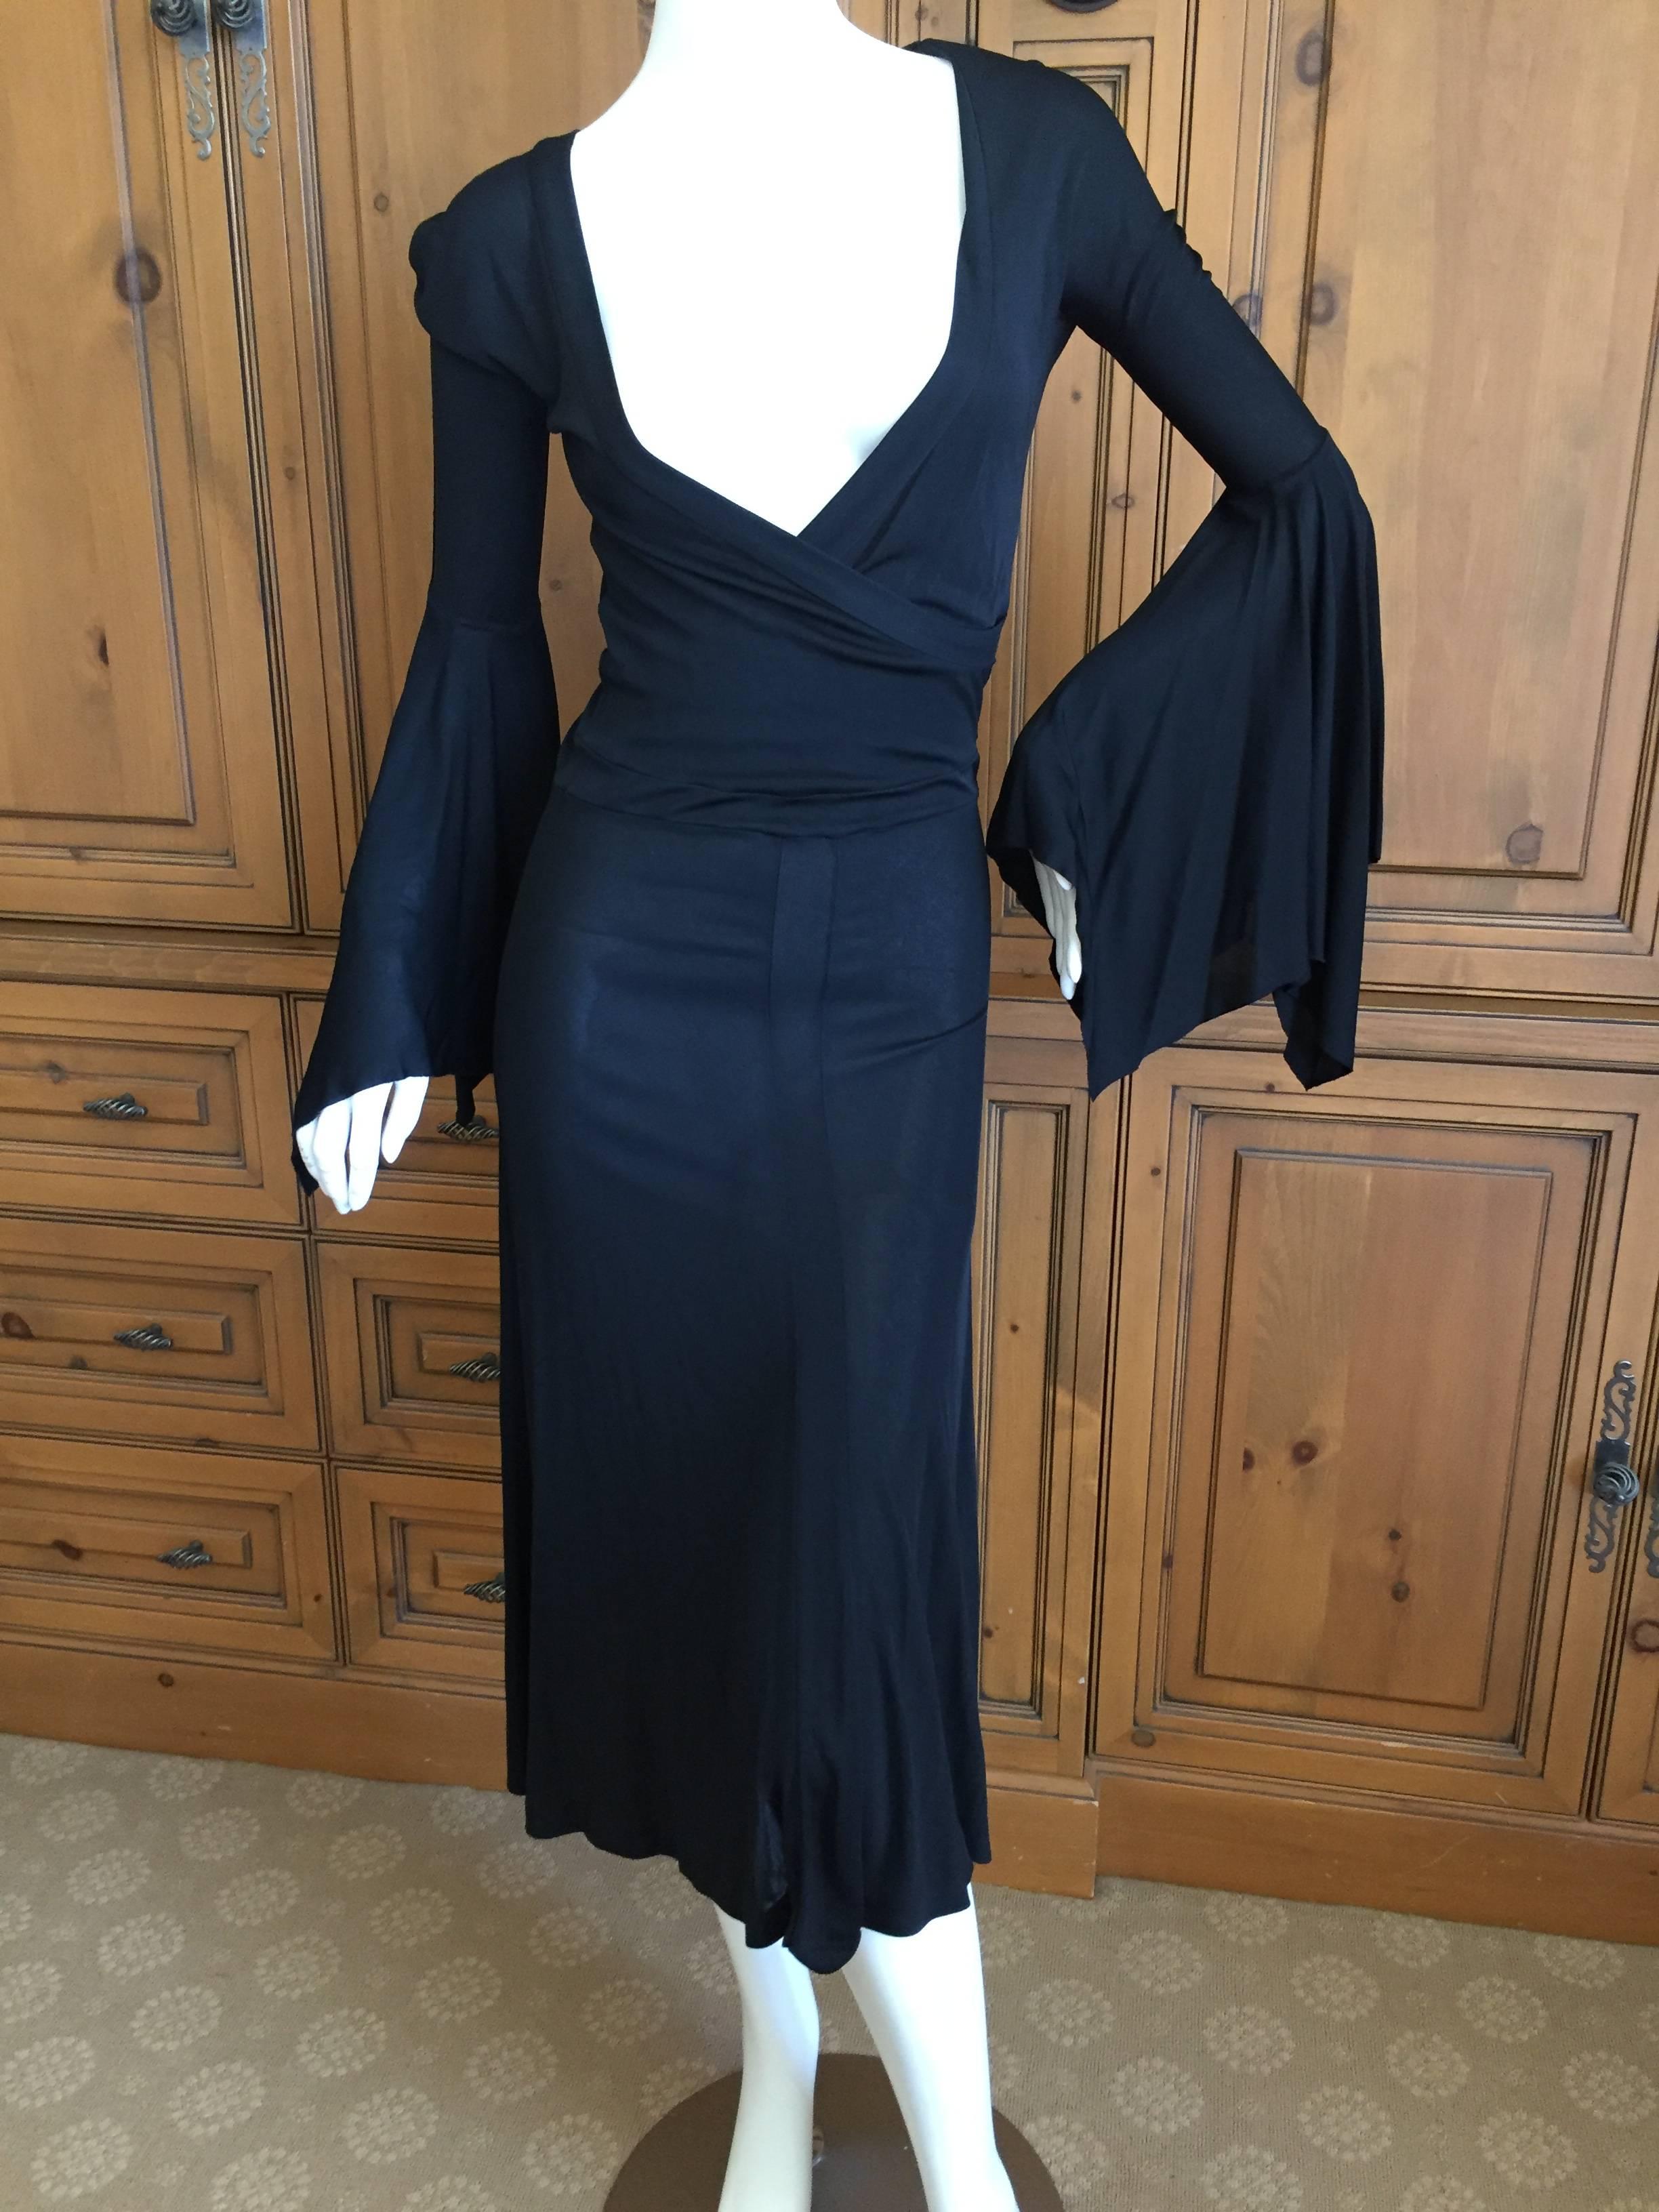 Black Tom Ford Yves Saint Laurent Bell Sleeve Dress